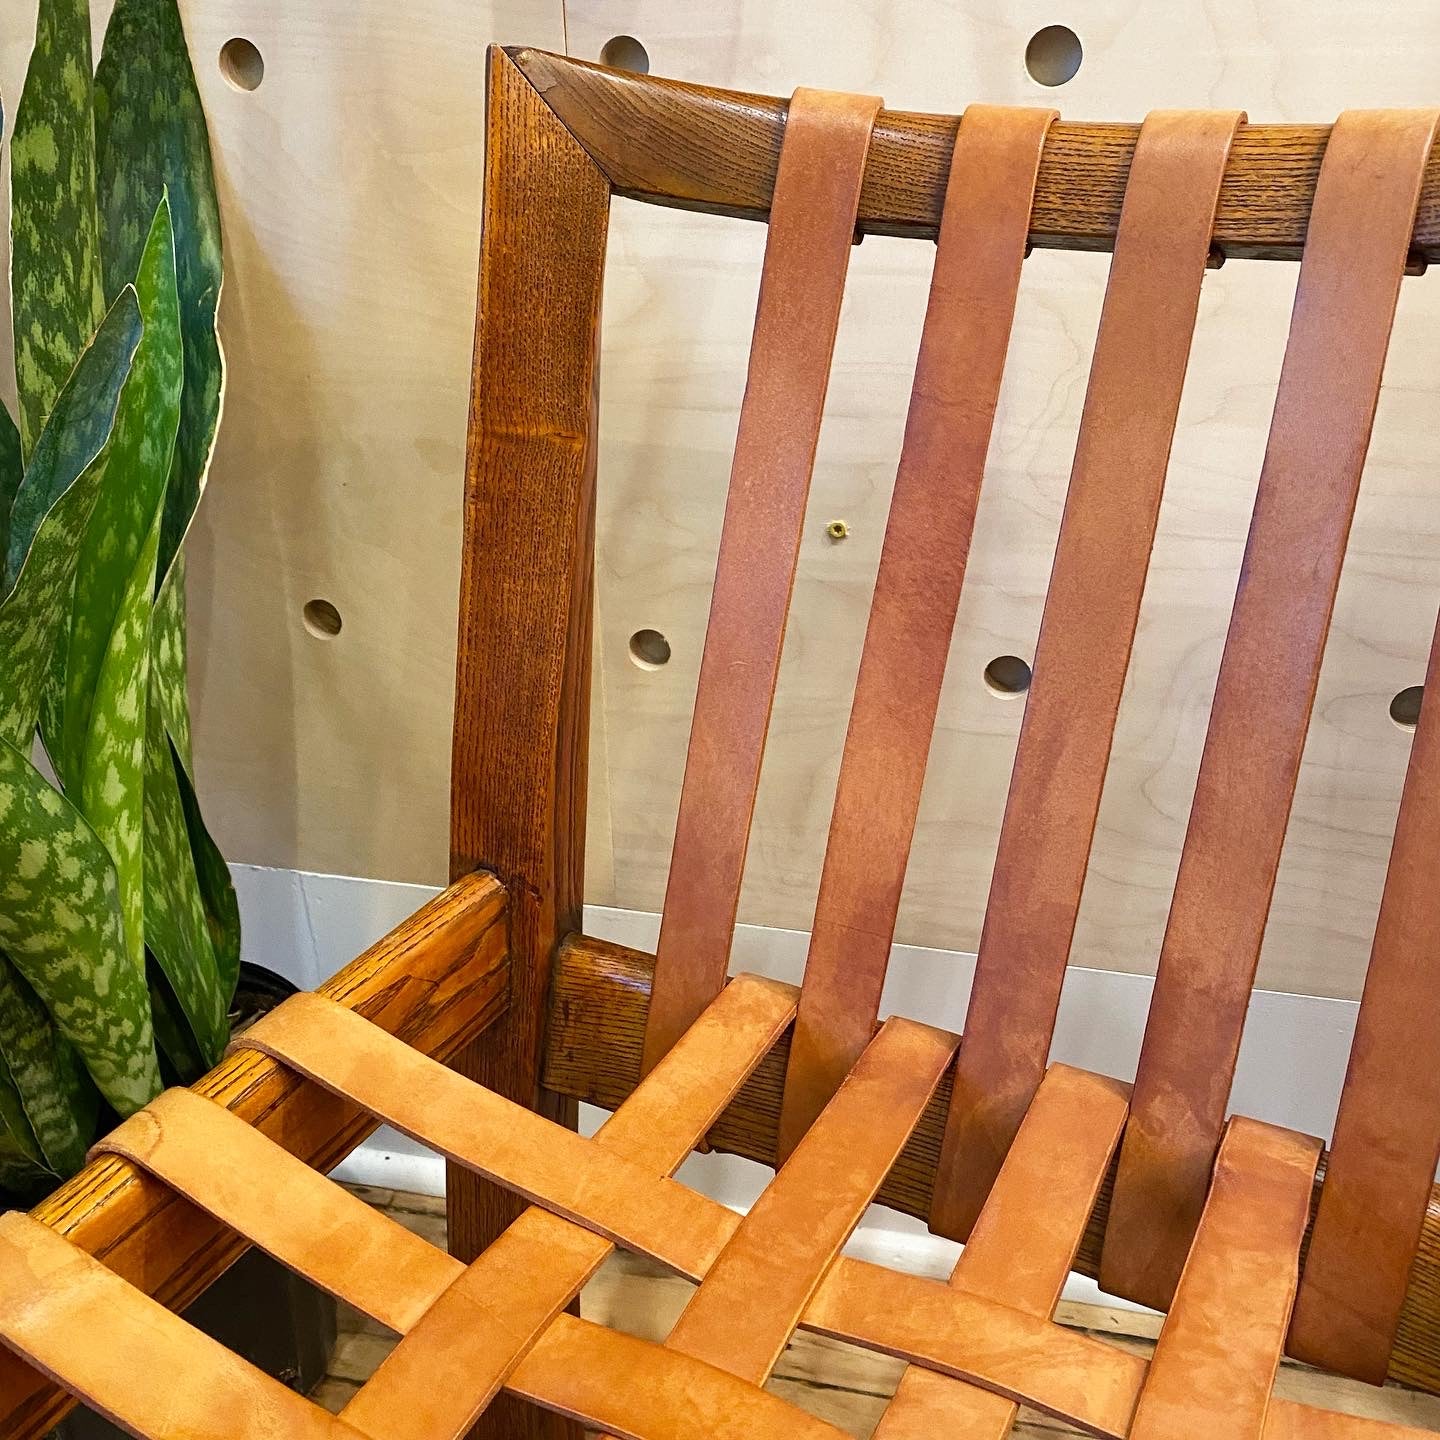 leather strap chair repair